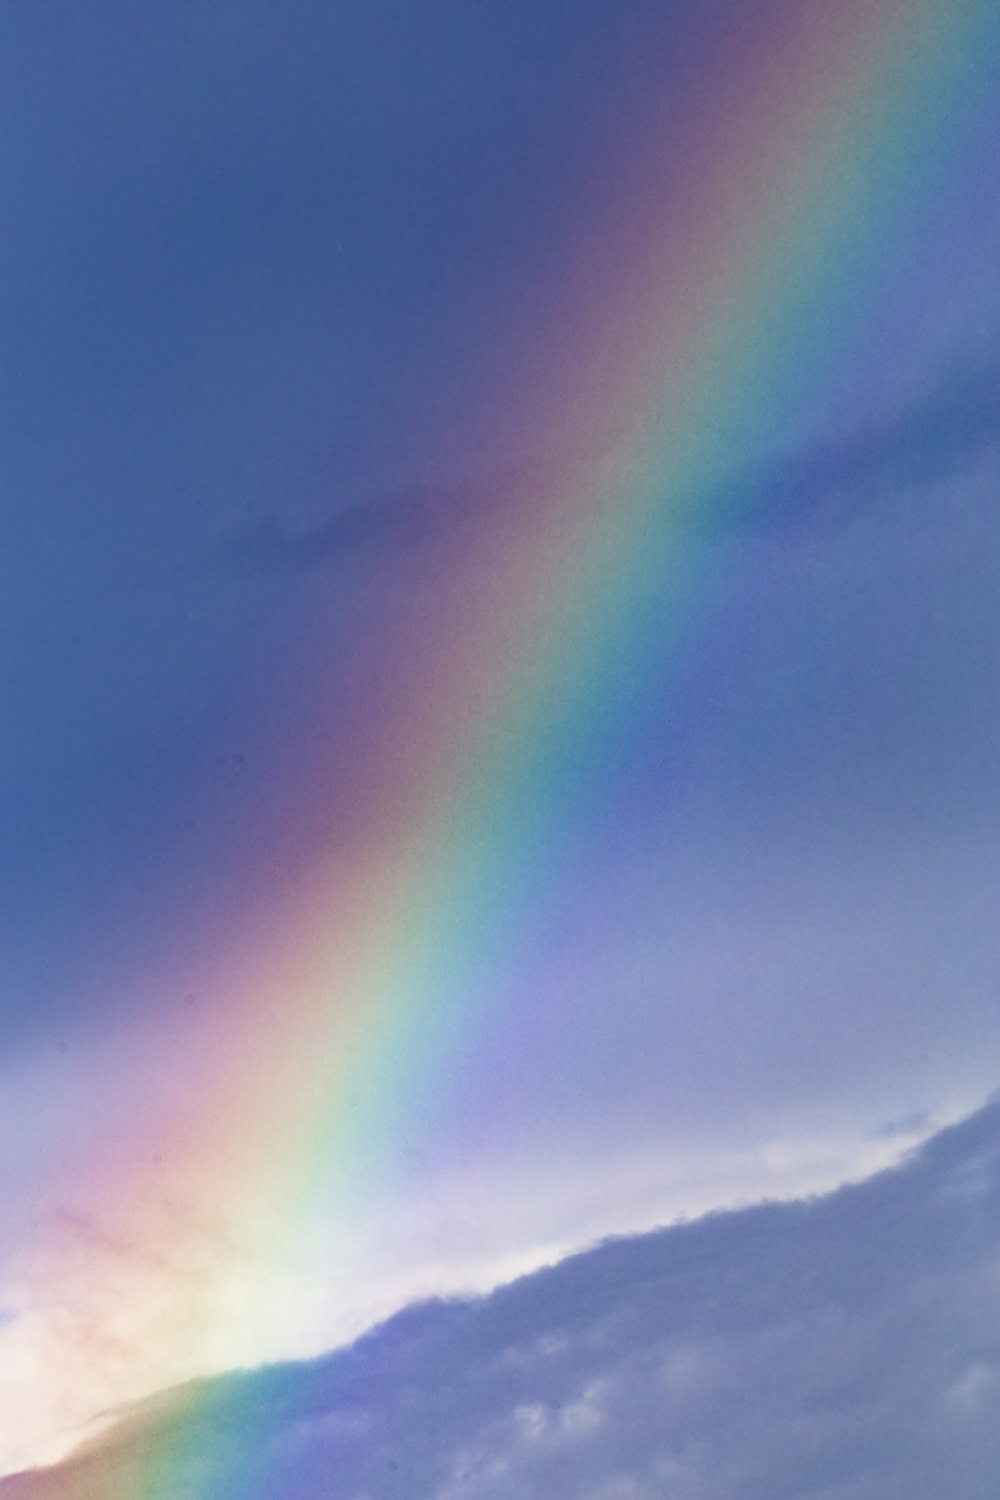 Marcha atrás Sorprendido torpe Rainbow Wallpapers: Descarga HD gratuita [500+ HQ] | Unsplash